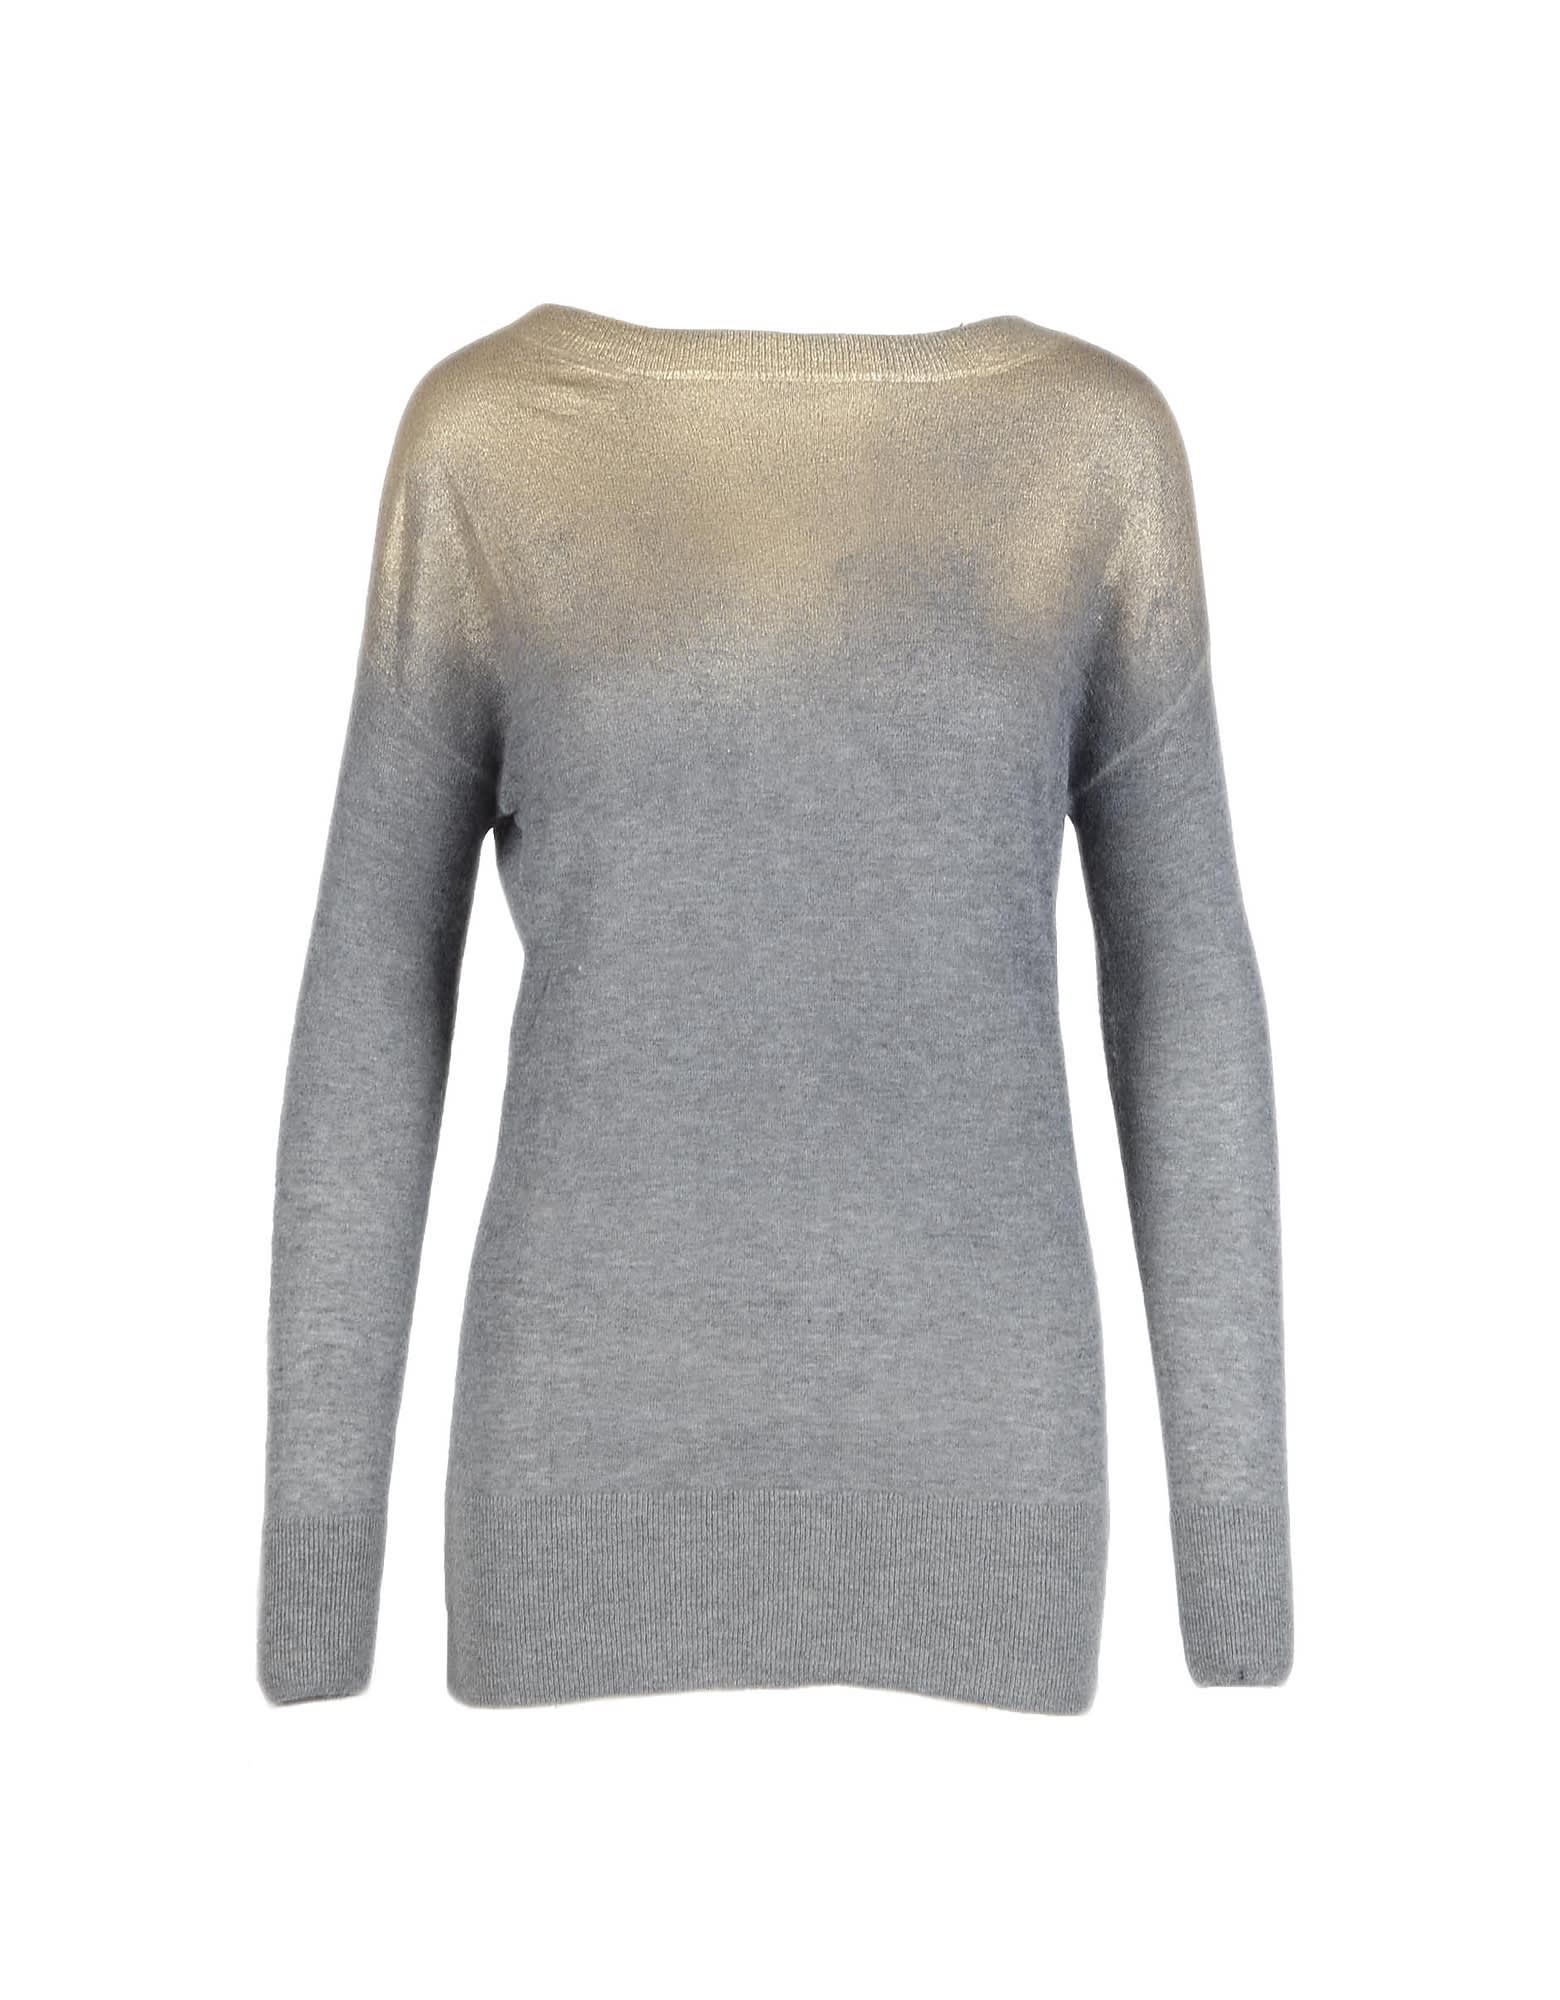 Ballantyne Womens Gray / Beige Sweater